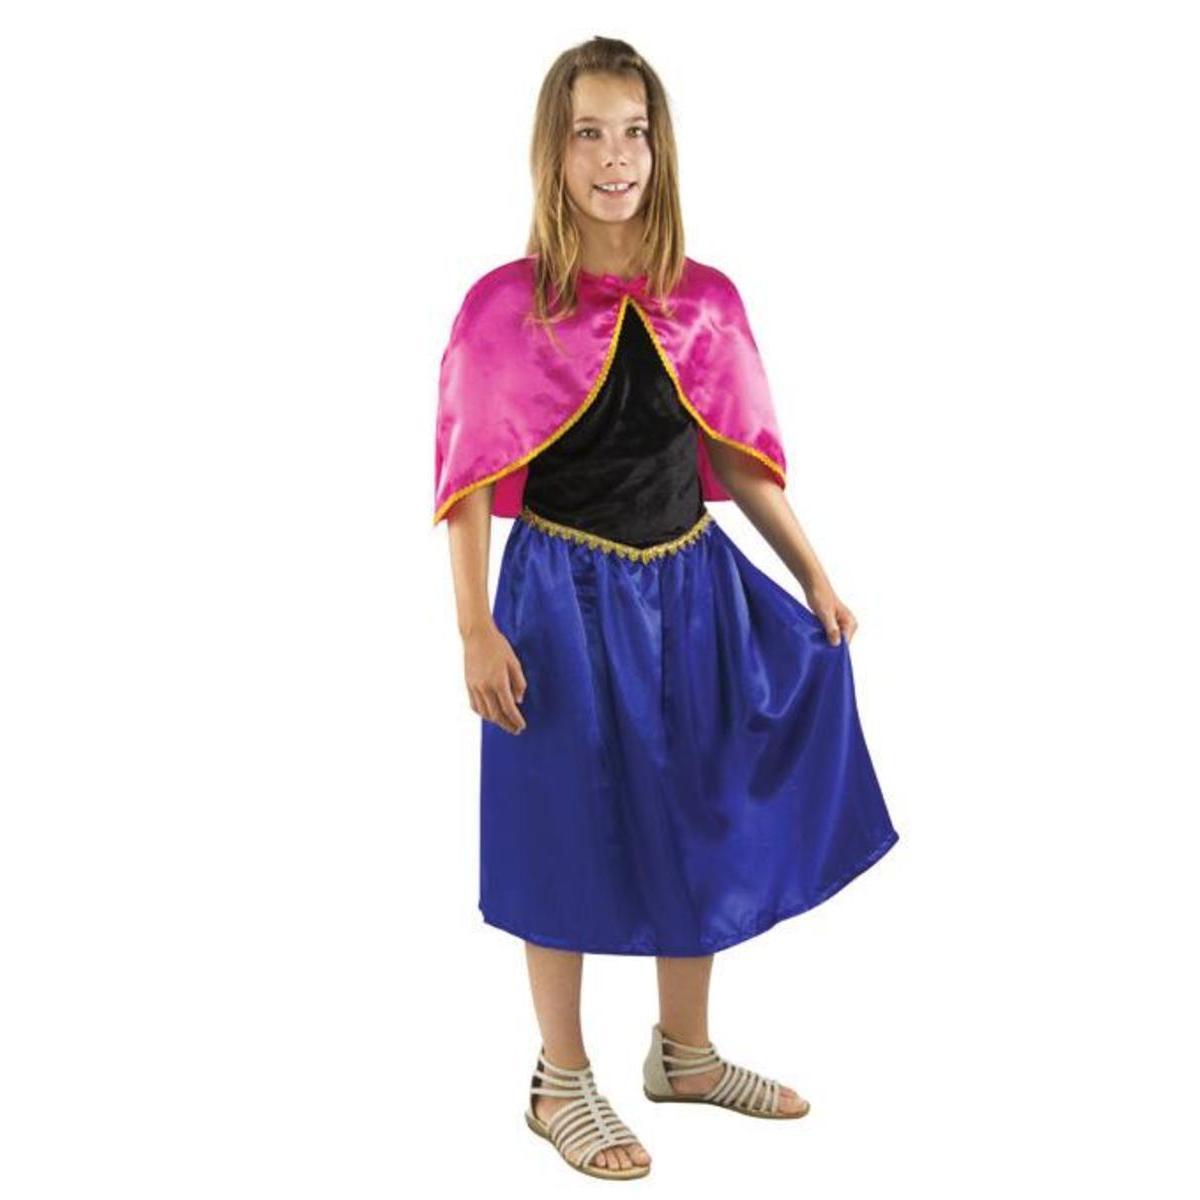 Costume enfant Reine des glaces - Taille L - L 48 x H 3 x l 44 cm - Multicolore - PTIT CLOWN